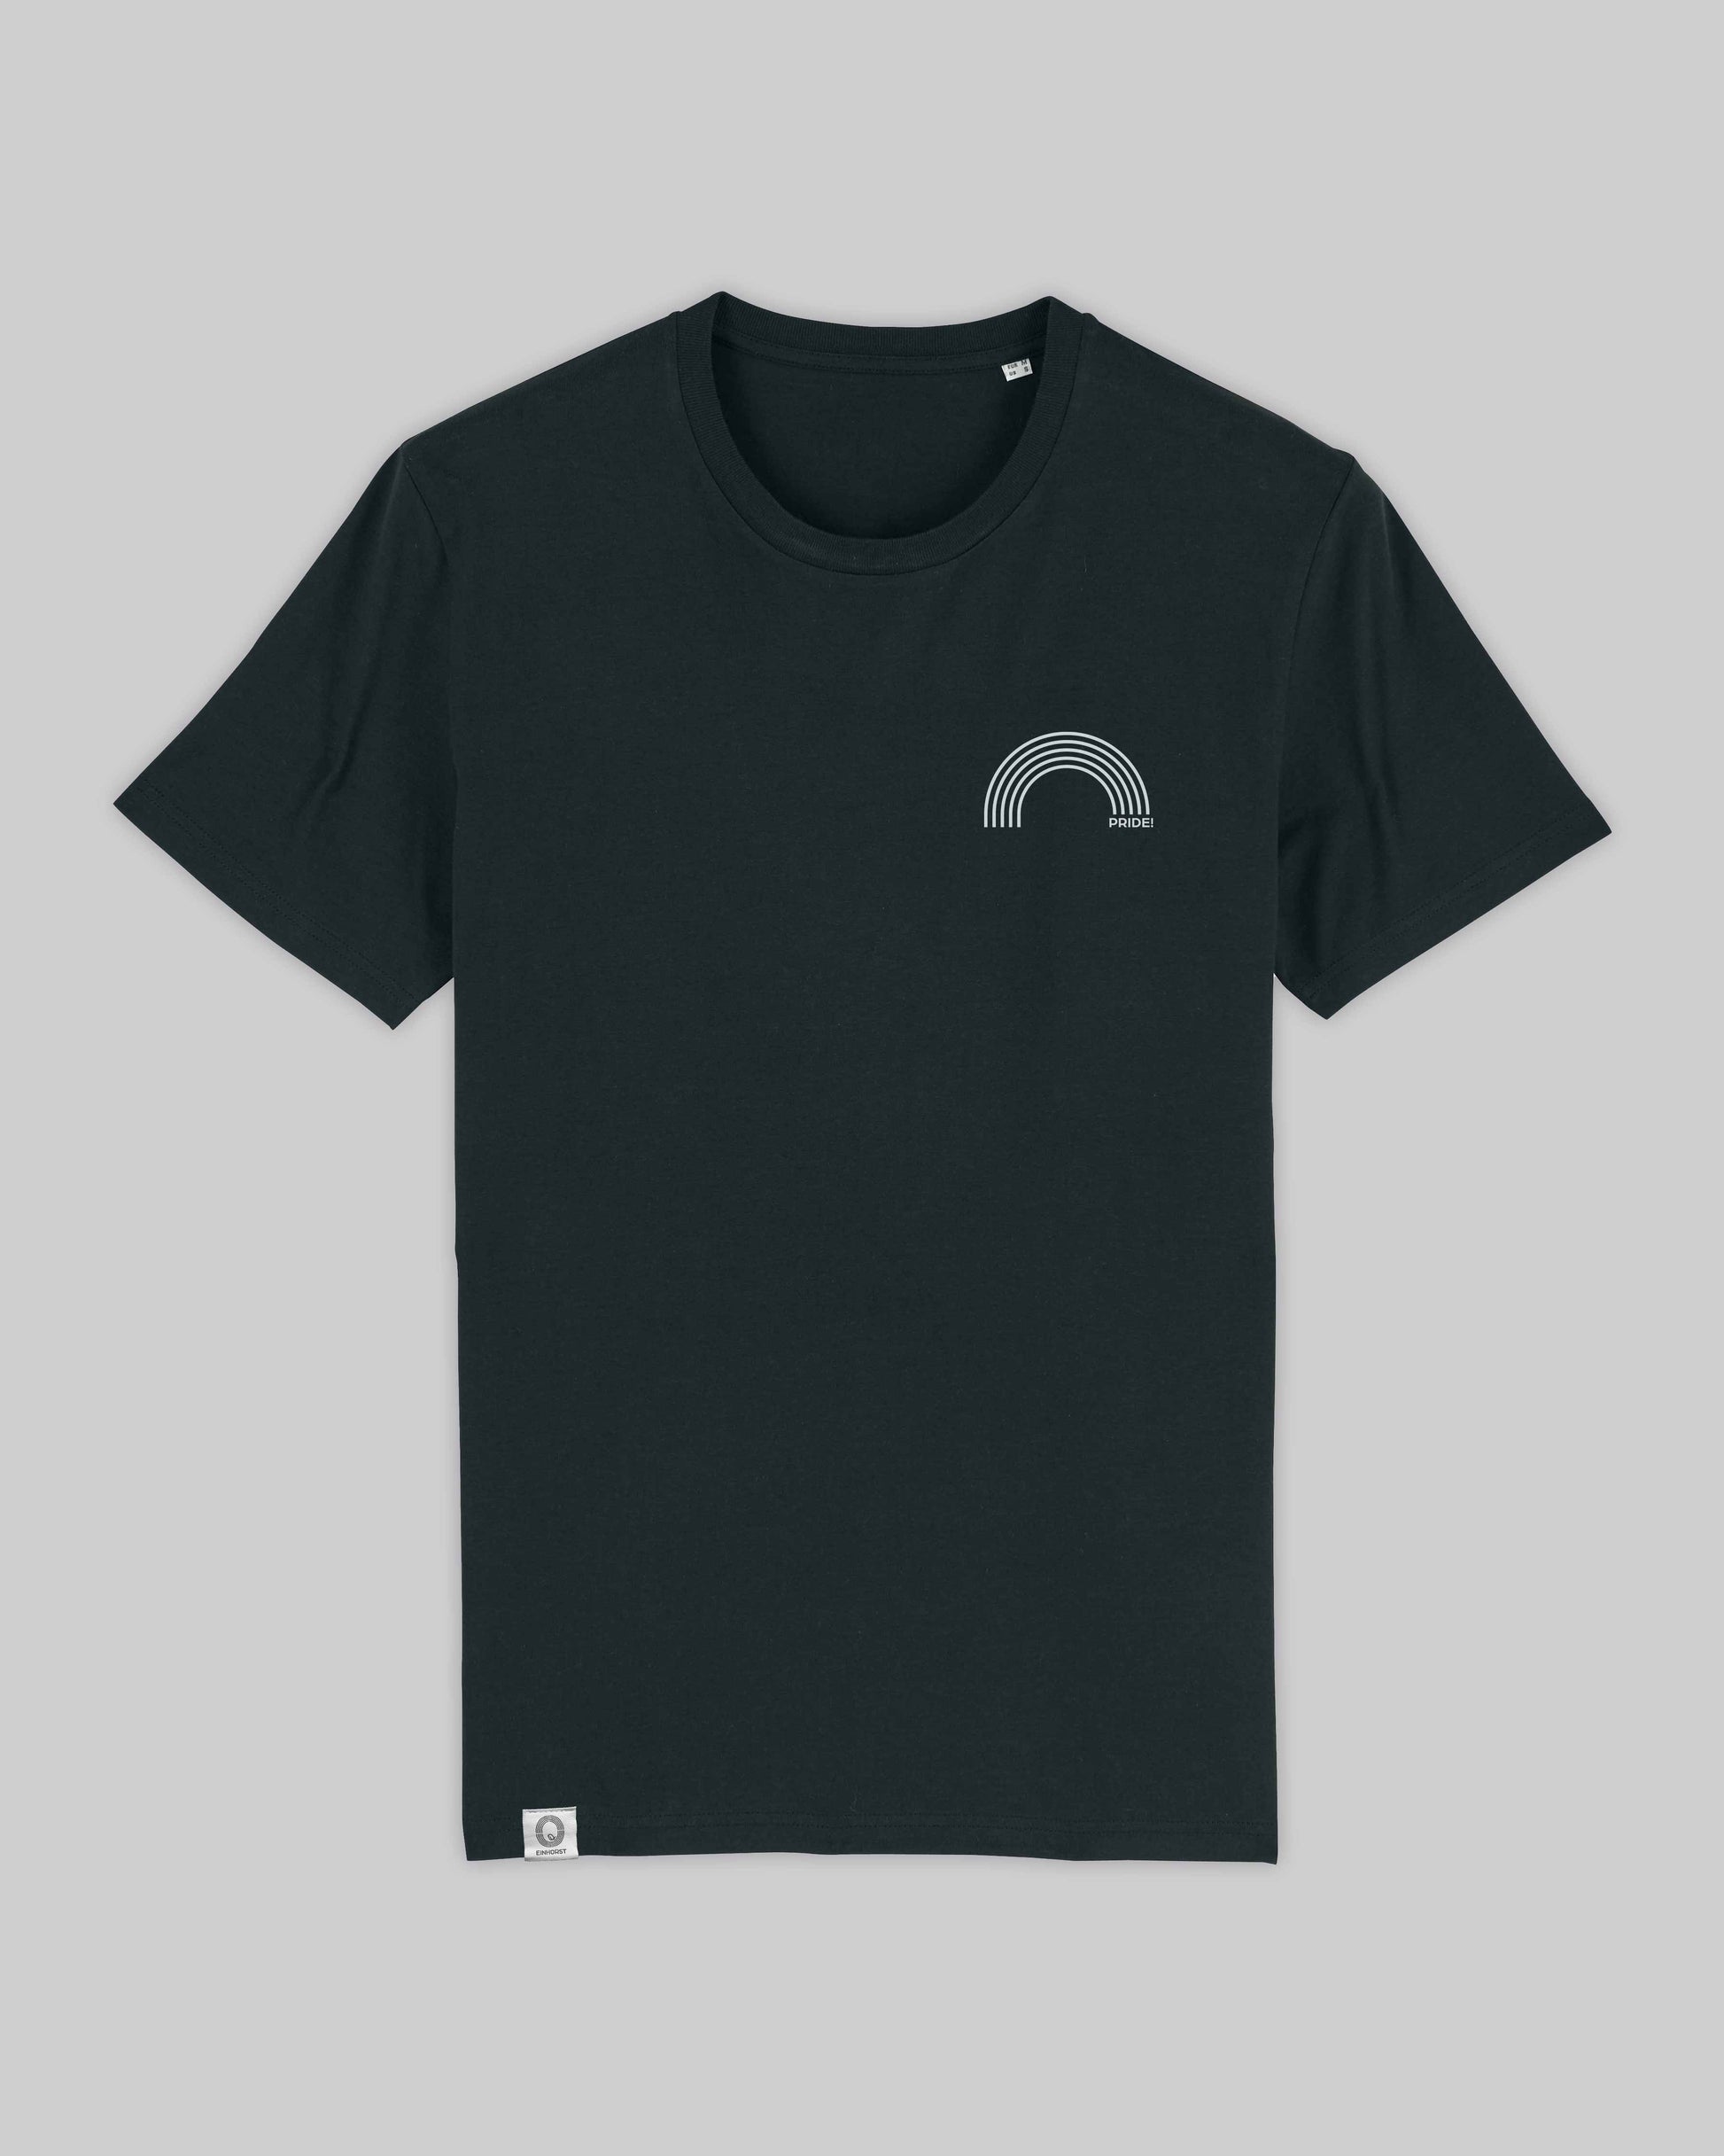 EINHORST® unisex Organic Shirt in Schwarz mit dem Motiv "pride Regenbogen" in der Kombination weißer Regenbogen mit weißer Schrift, Bild von Shirt von vorne